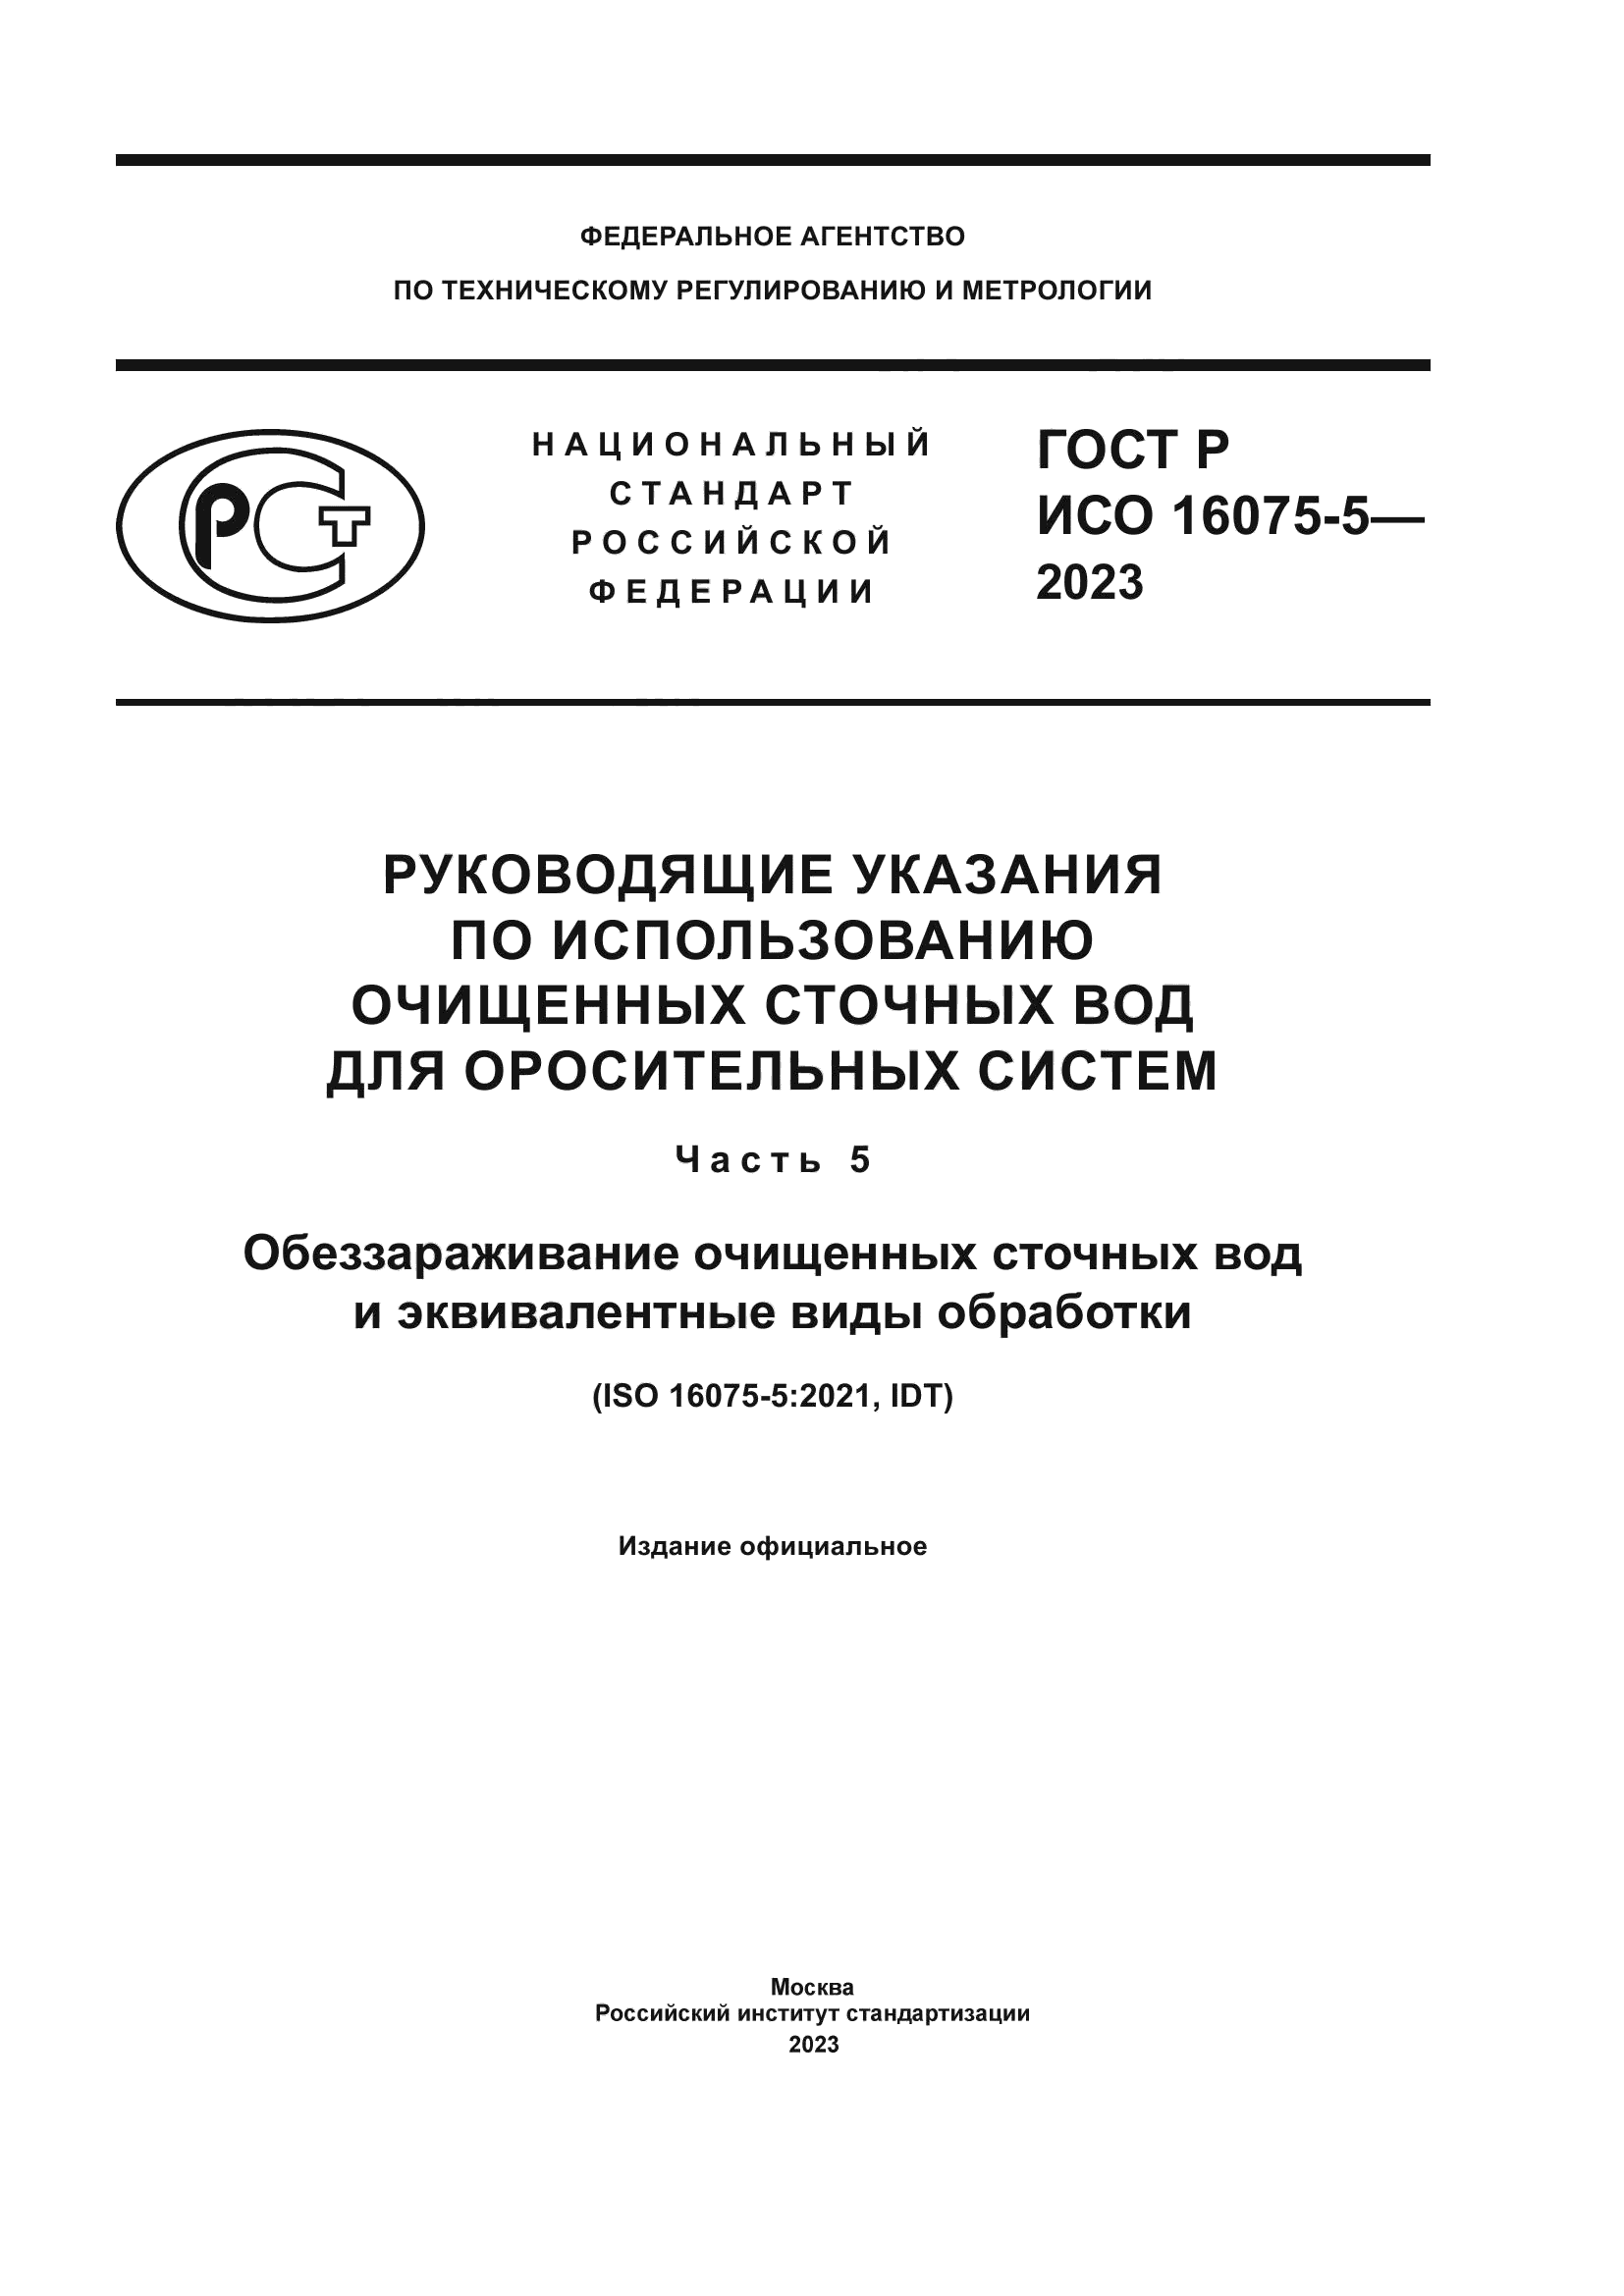 ГОСТ Р ИСО 16075-5-2023